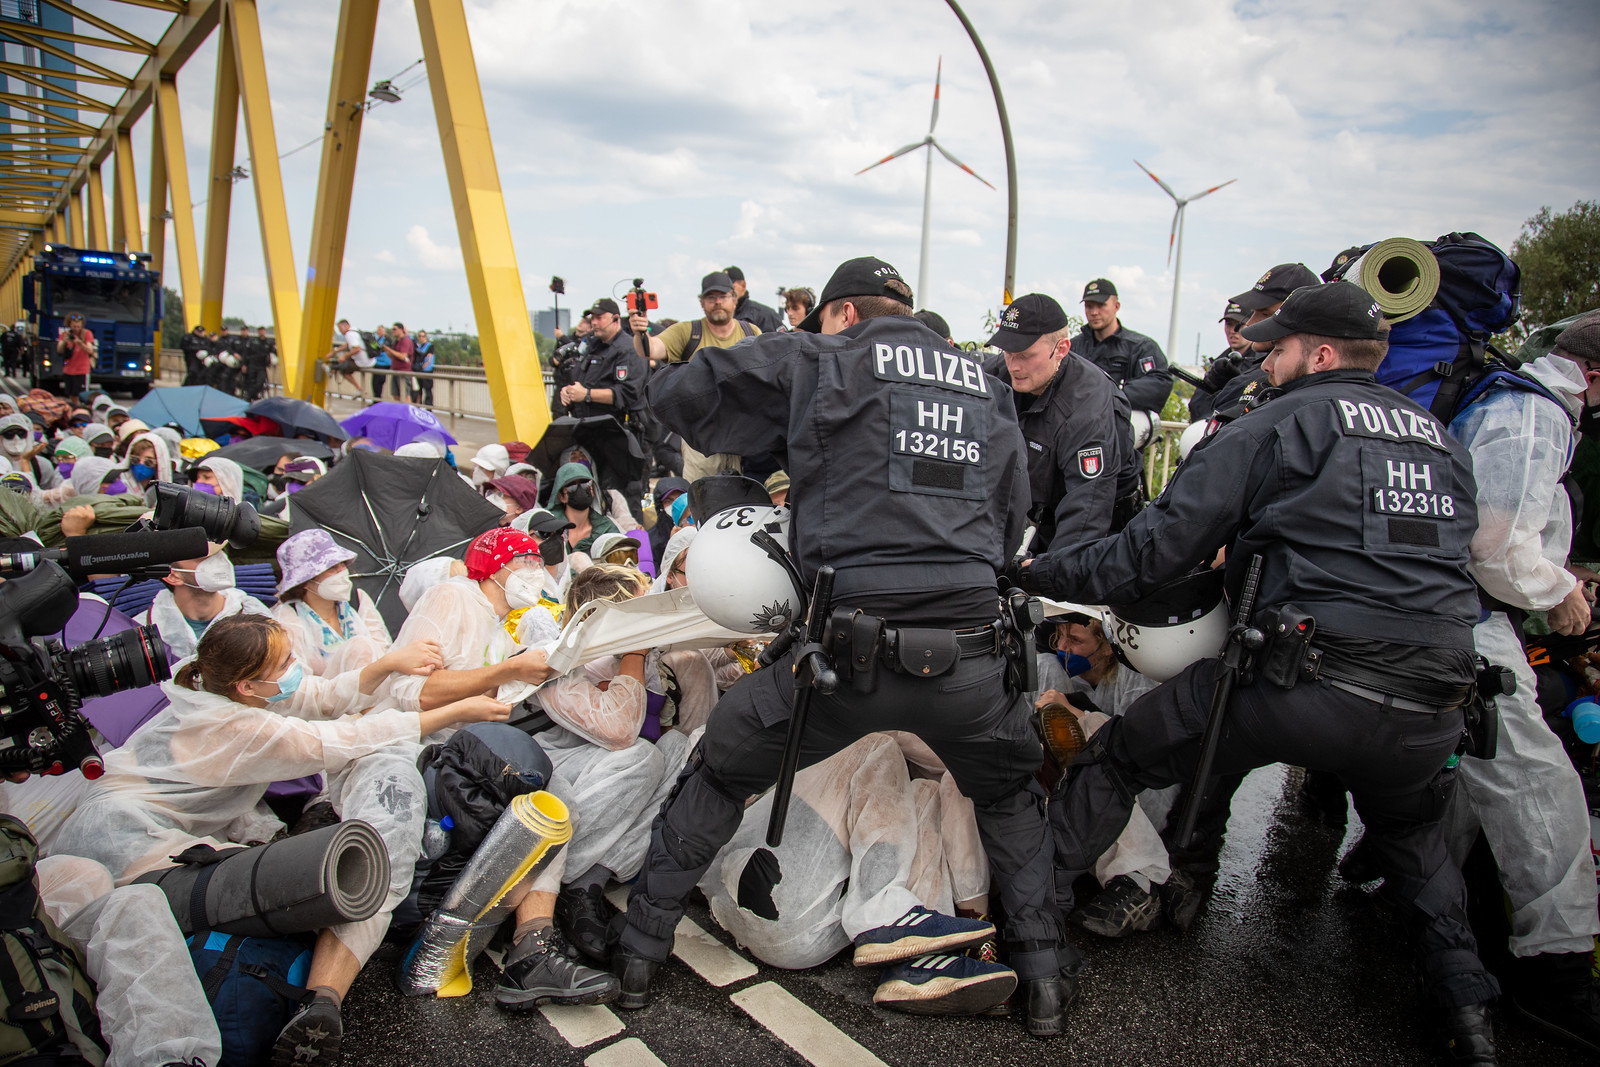 Das Bild zeigt Aktivist*innen des Lila Fingers beim besetzen der Kattwykbrücke. Während die Polizei versucht die Aktivist*innen zum Aufgeben zu zwingen.